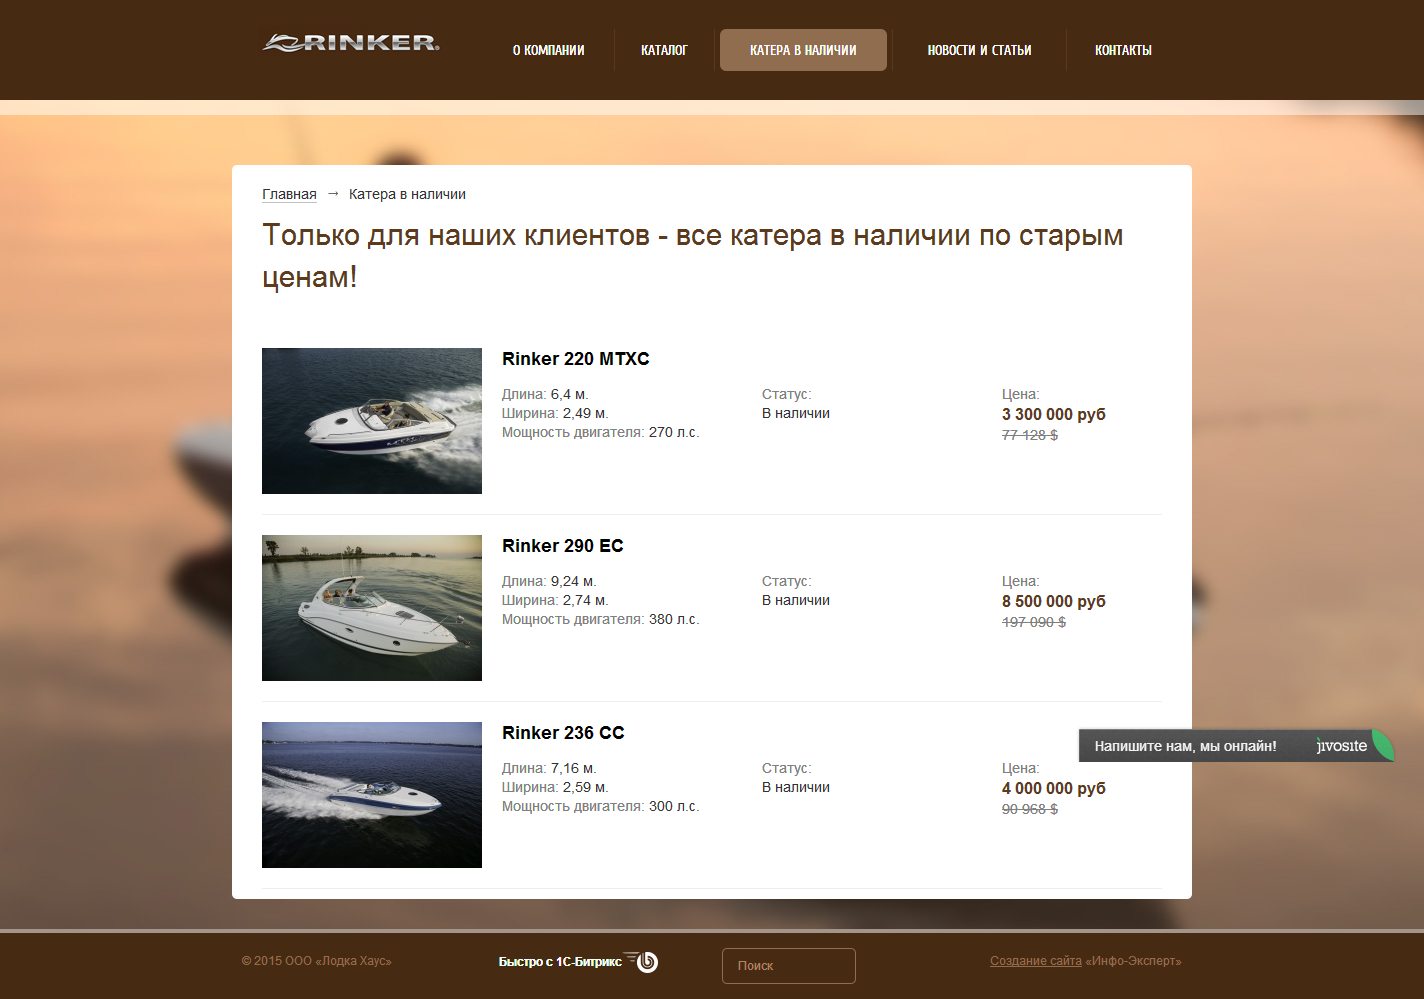 сайт официального представителя марки rinker в россии